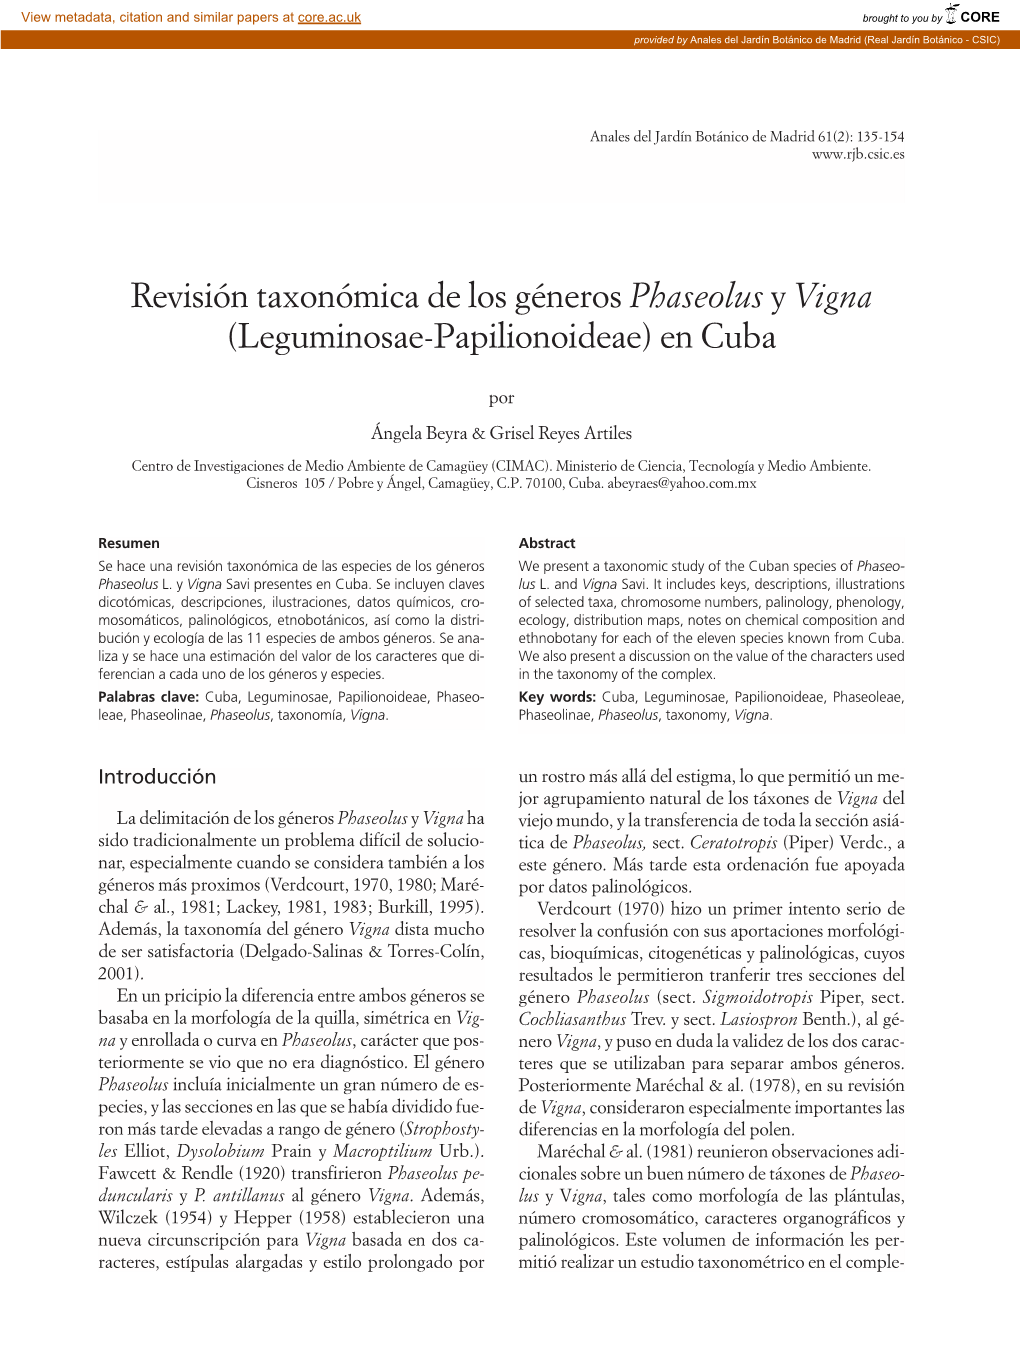 Revisión Taxonómica De Los Géneros Phaseolus Y Vigna (Leguminosae-Papilionoideae) En Cuba